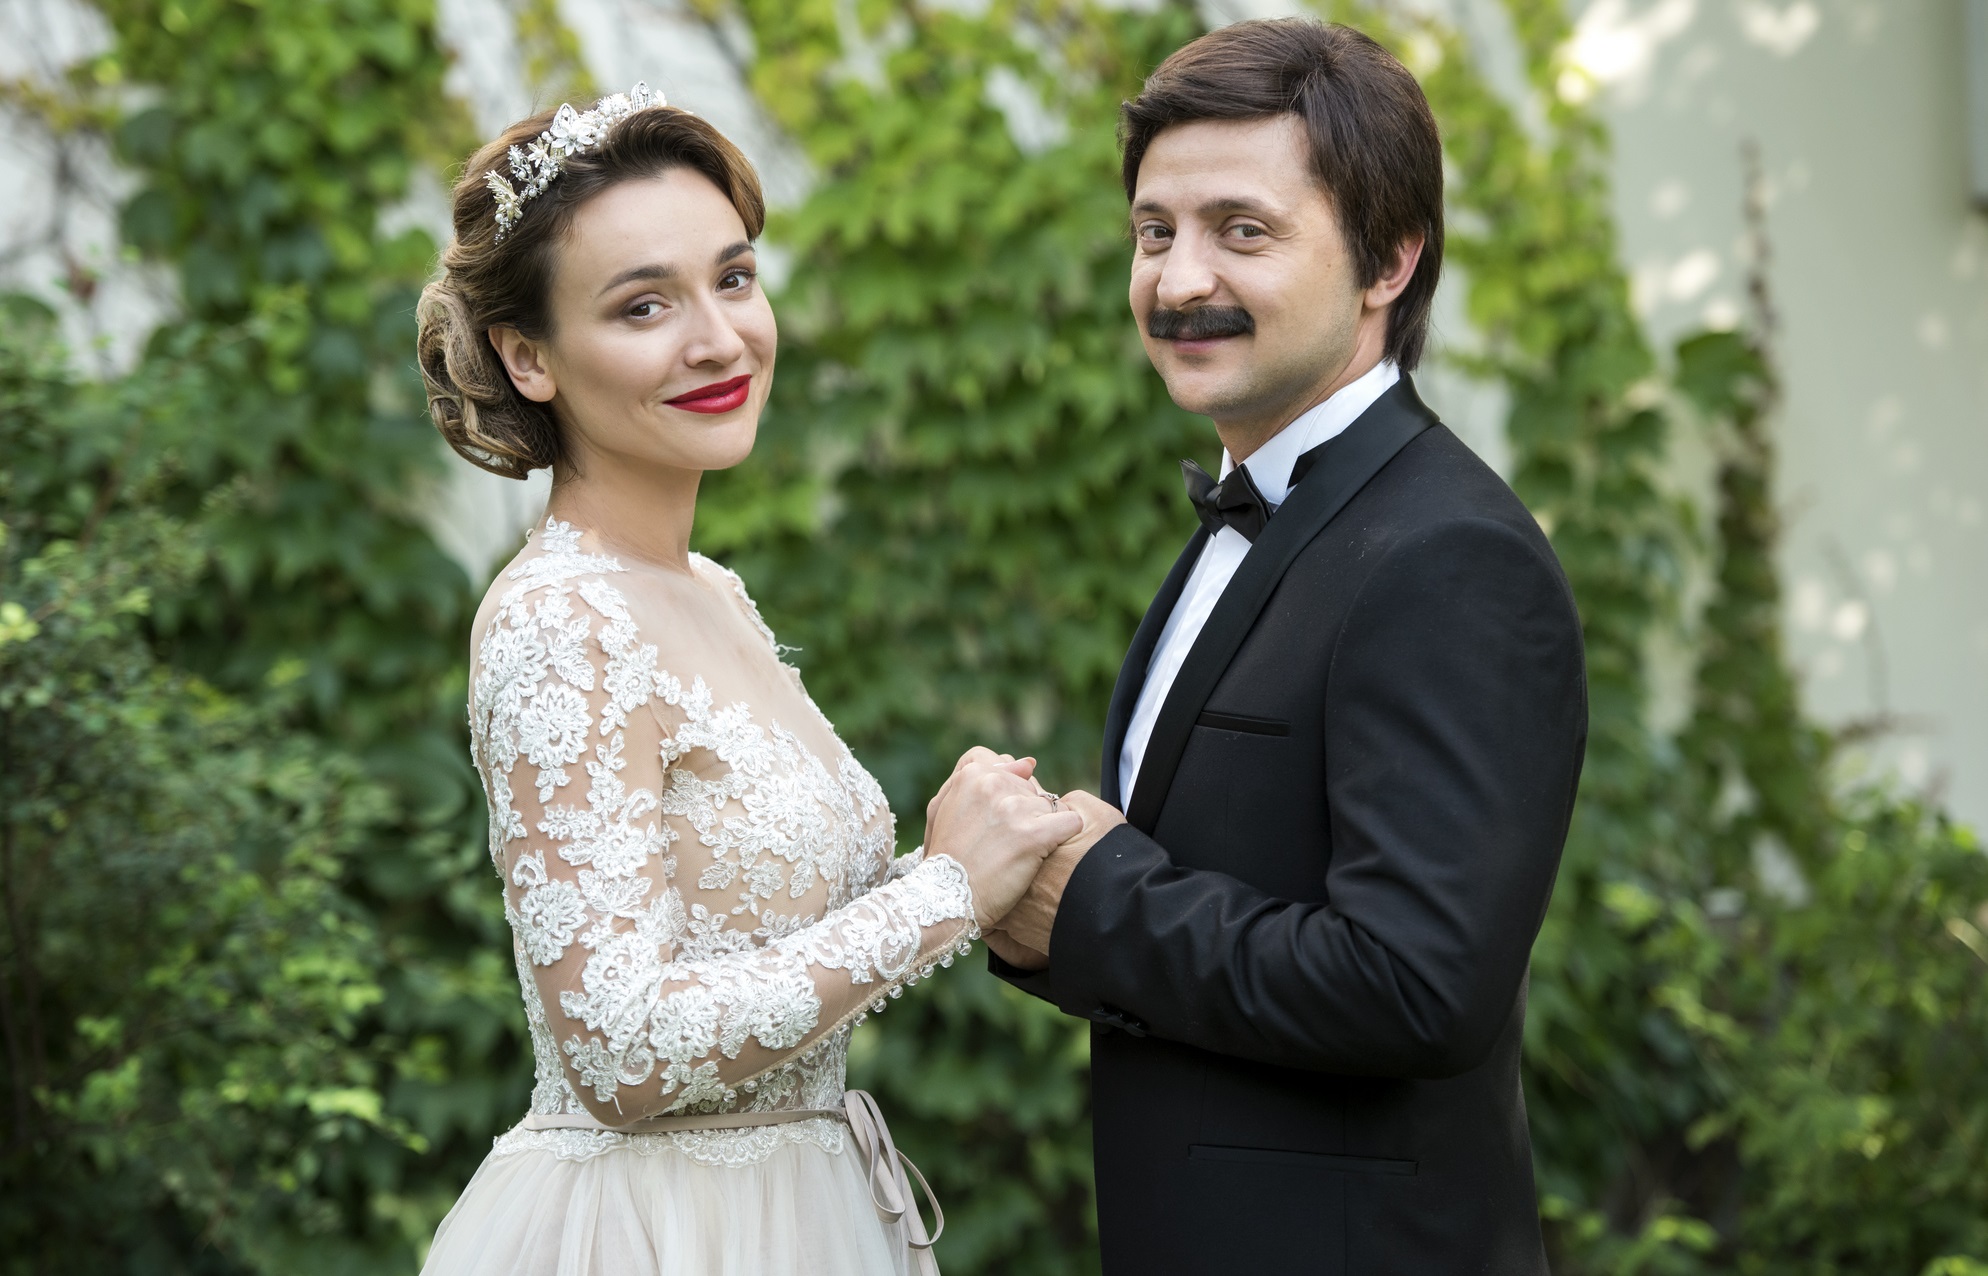 Комедия  "Я, Ты, Он, Она" стала самым кассовым украинским фильмом - фото 1